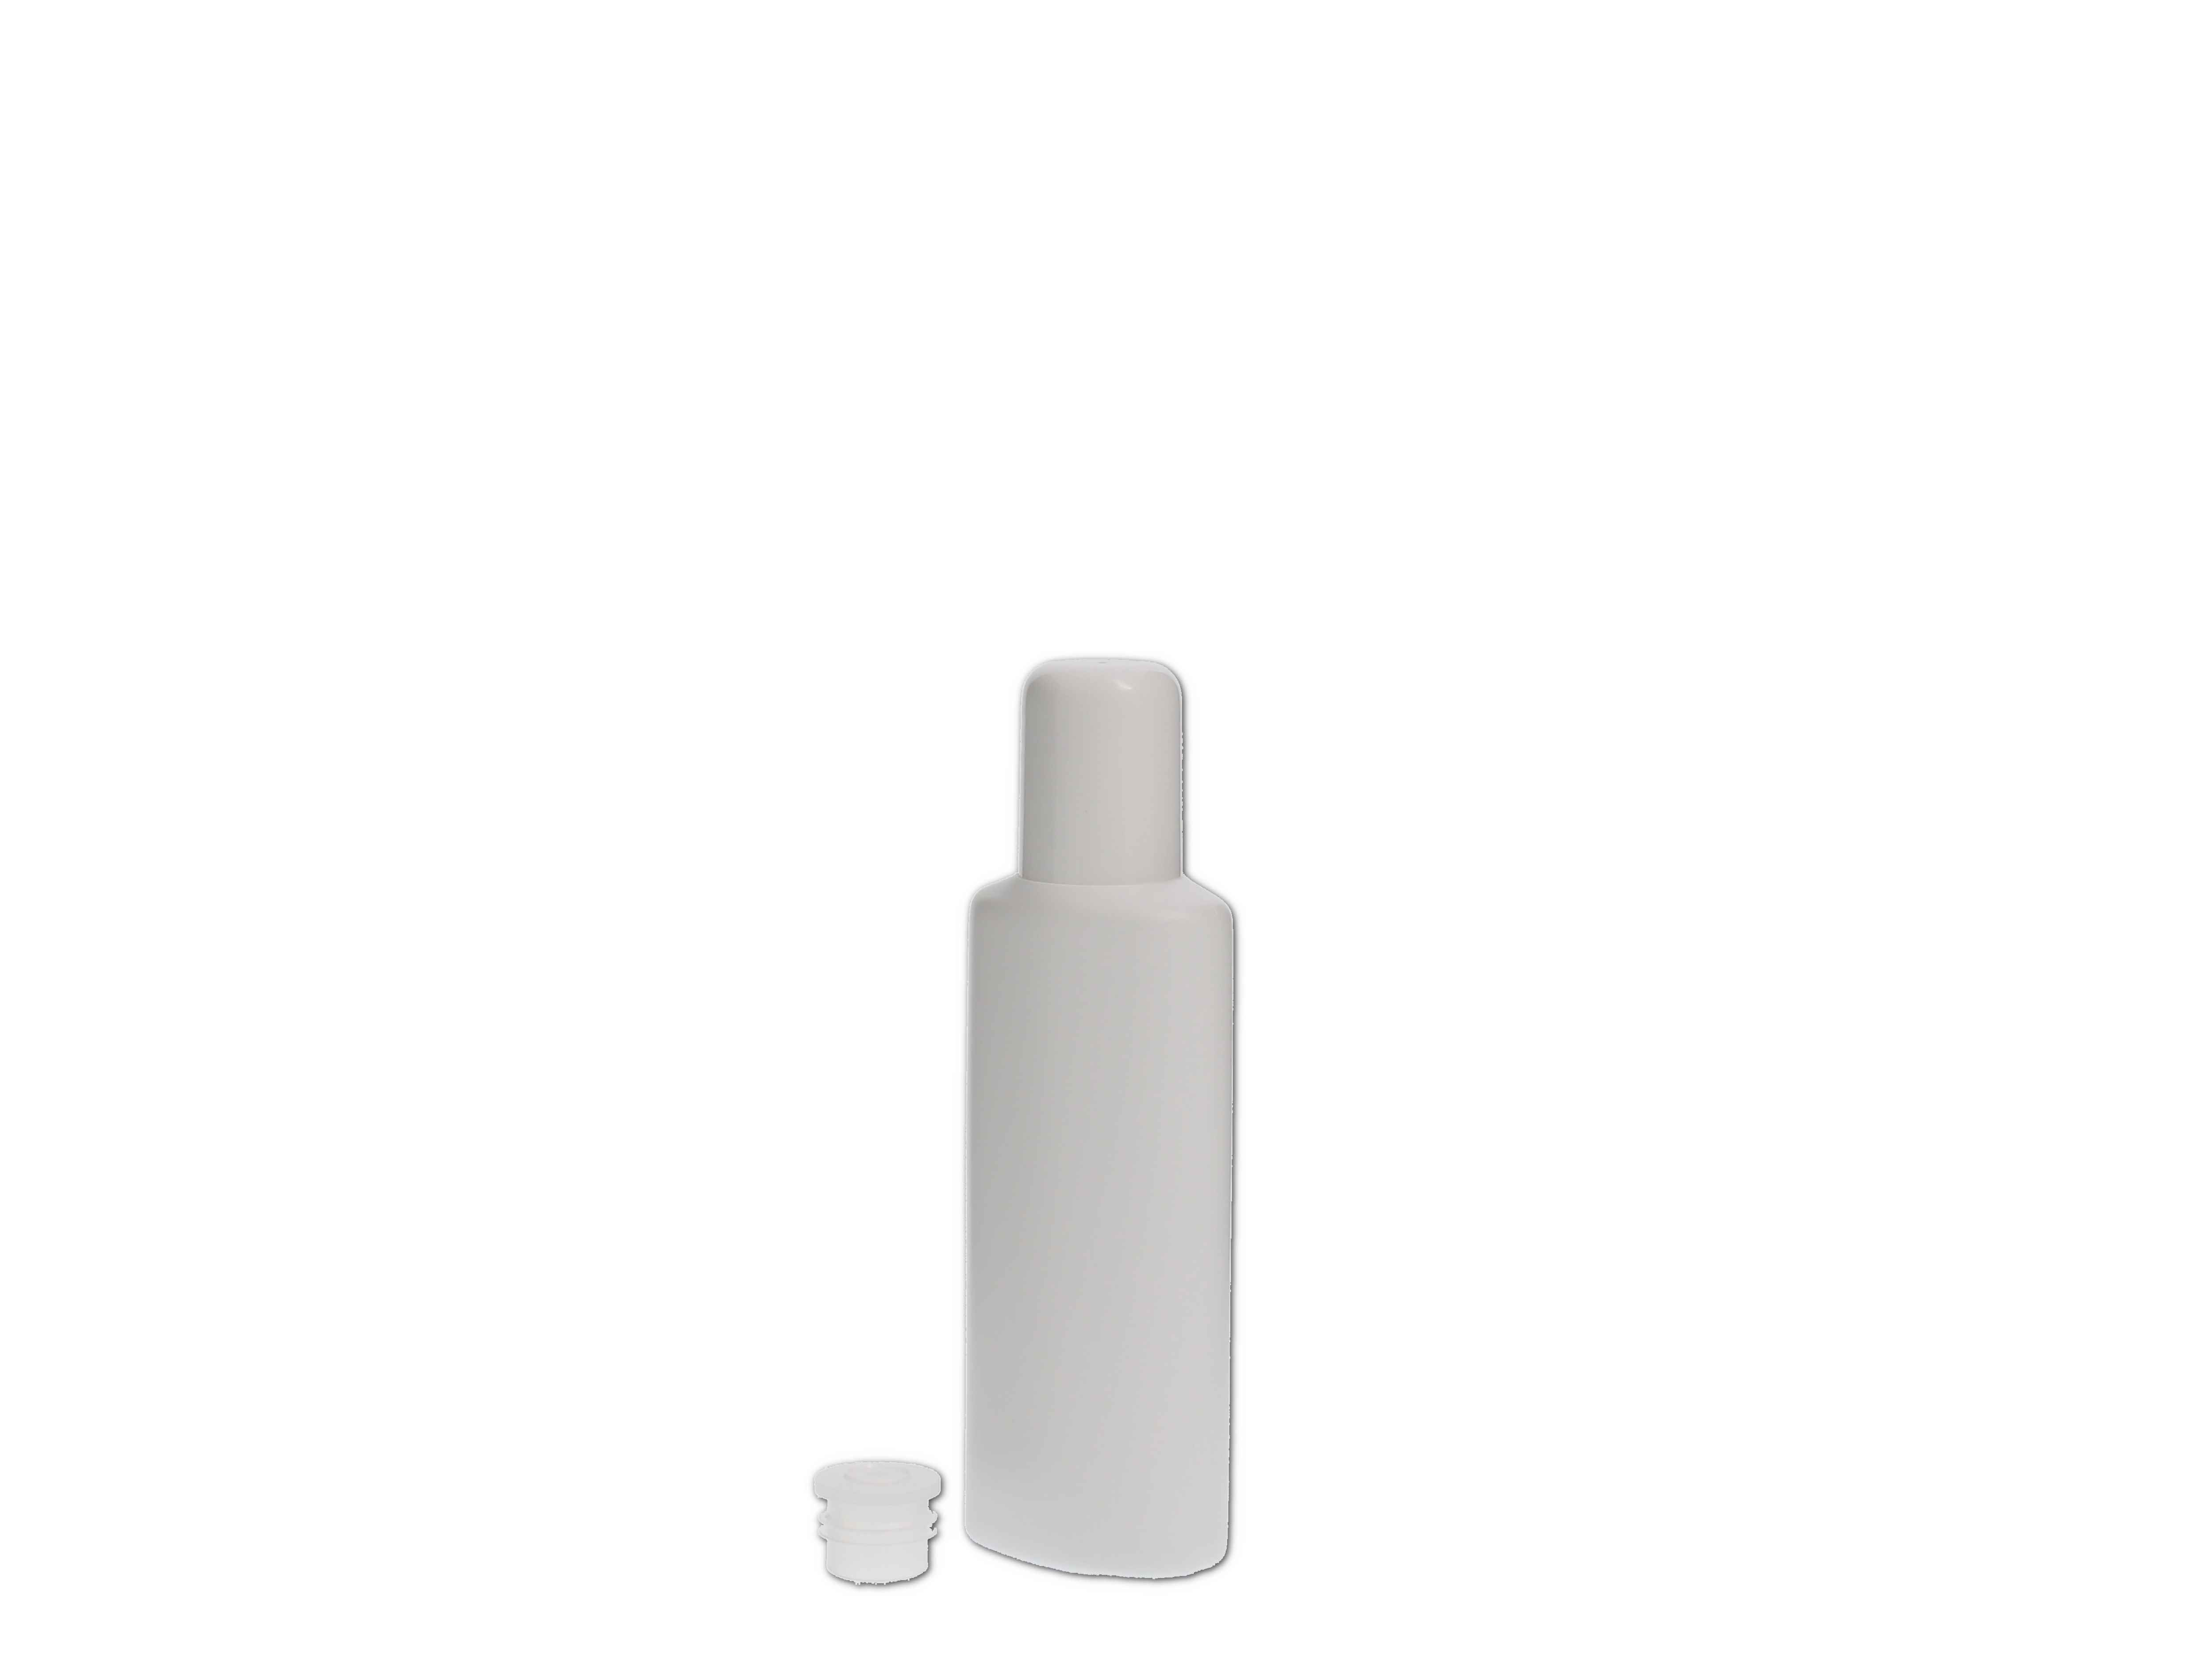    Kosmetikflasche, Kunststoff weiß, oval mit Spritzeinsatz 50ml